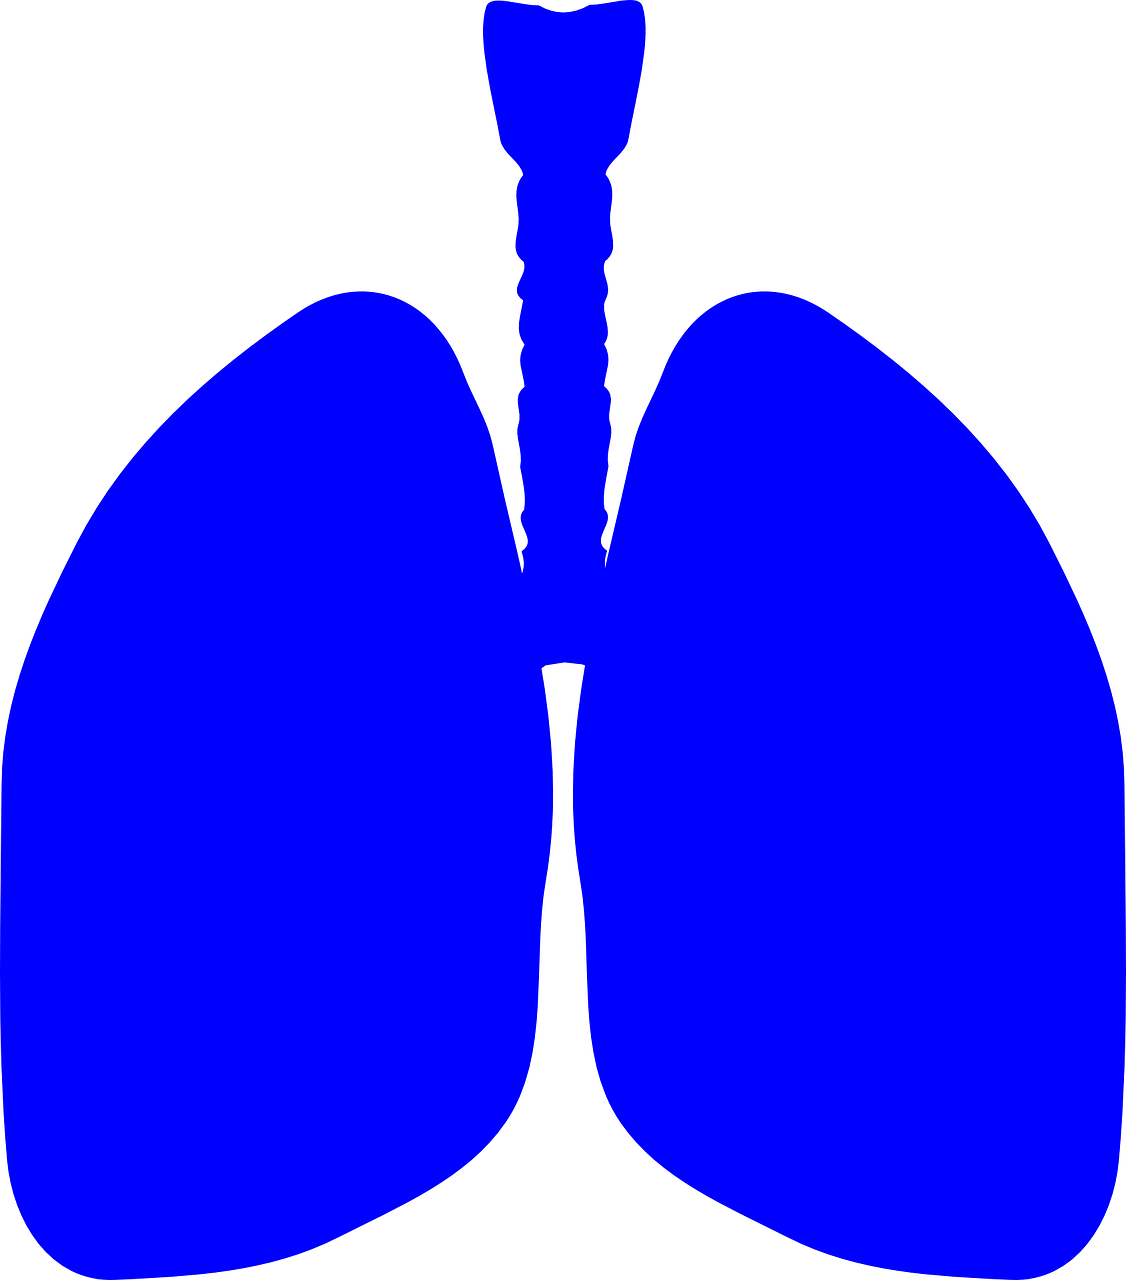 Plaučiai, Žmogaus Kūnas, Anatomija, Kūnas, Žmogus, Medicinos, Sveikata, Biologija, Plaučių, Piktograma